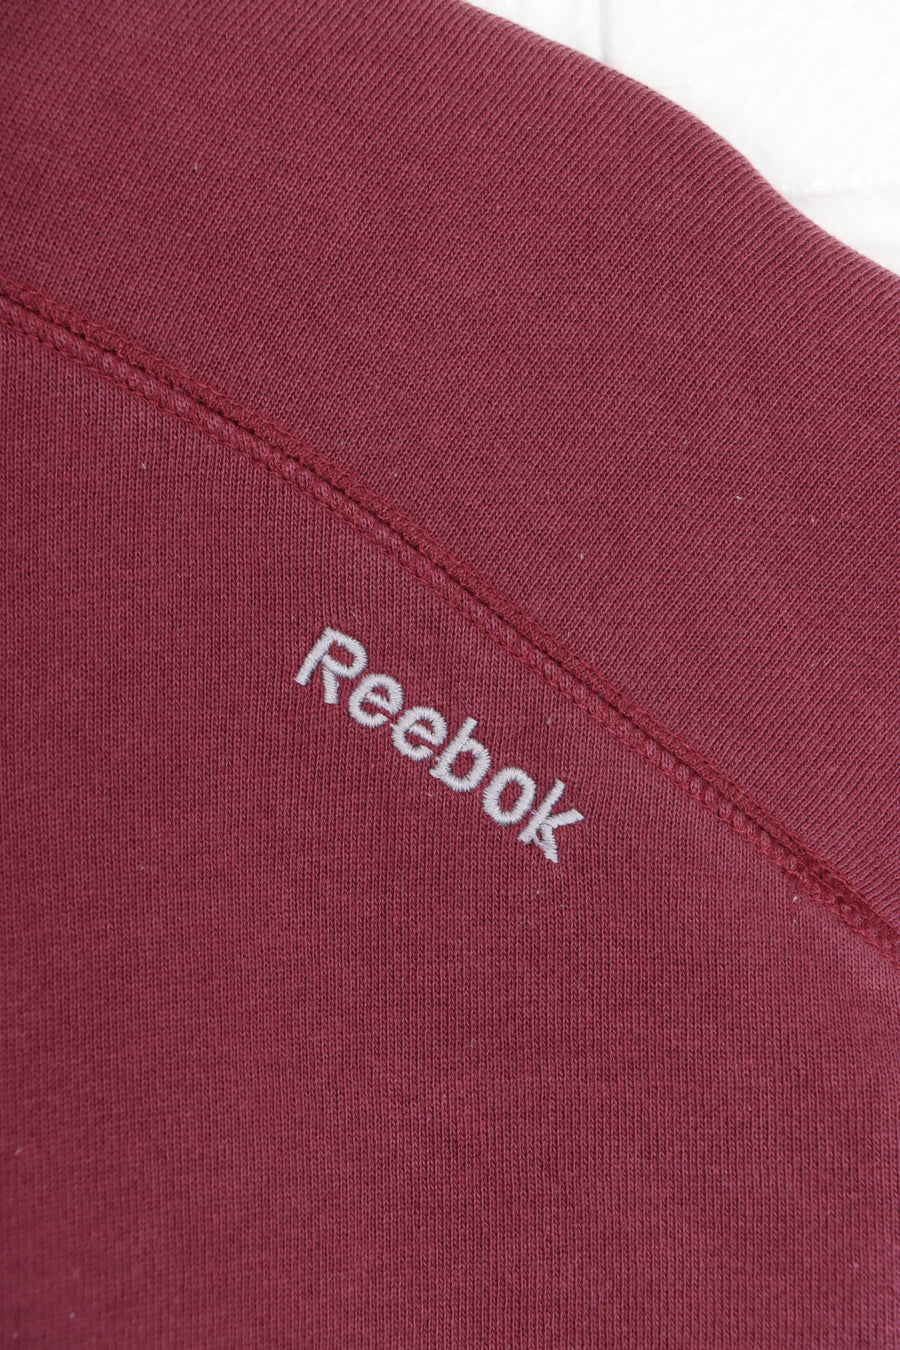 REEBOK Maroon Big Logo Hoodie (M)